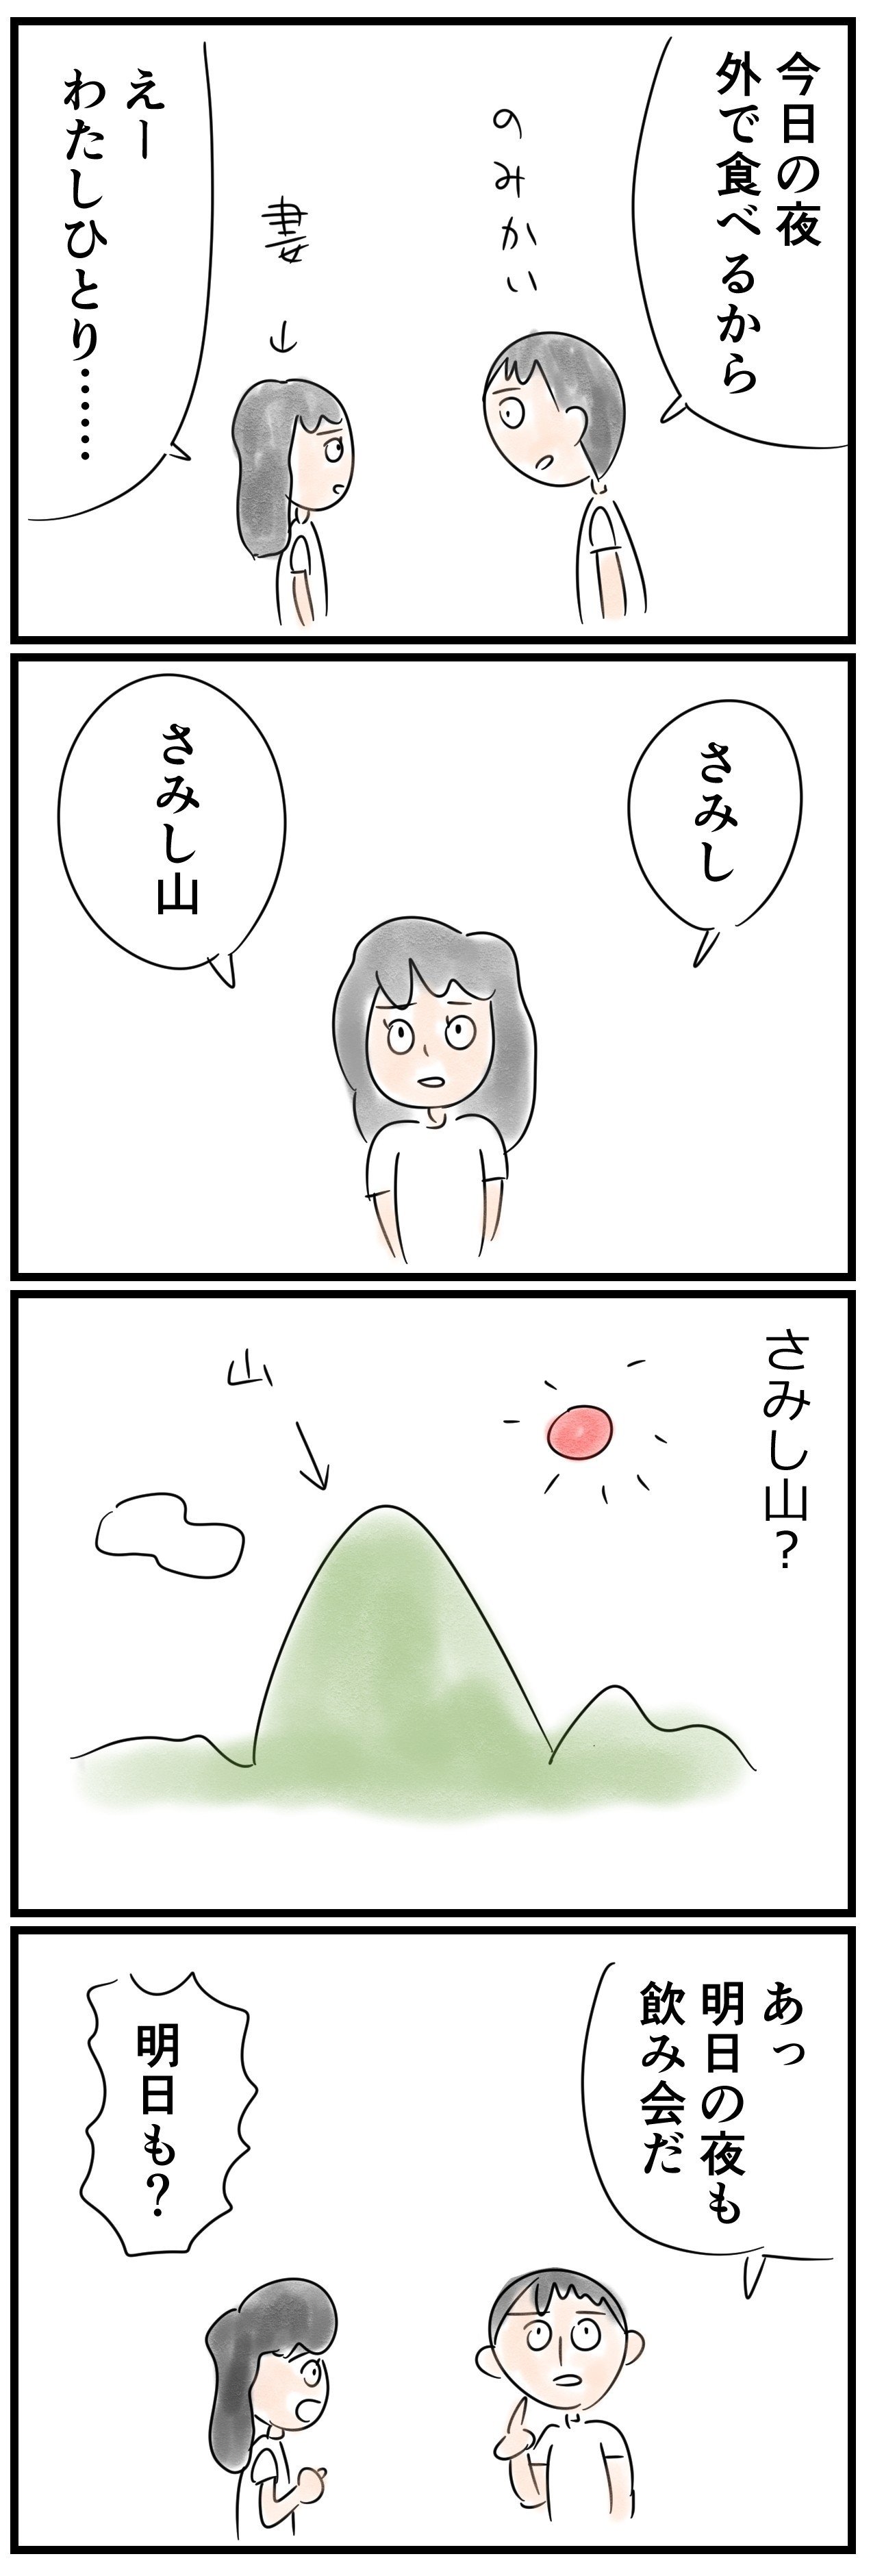 さみし山1